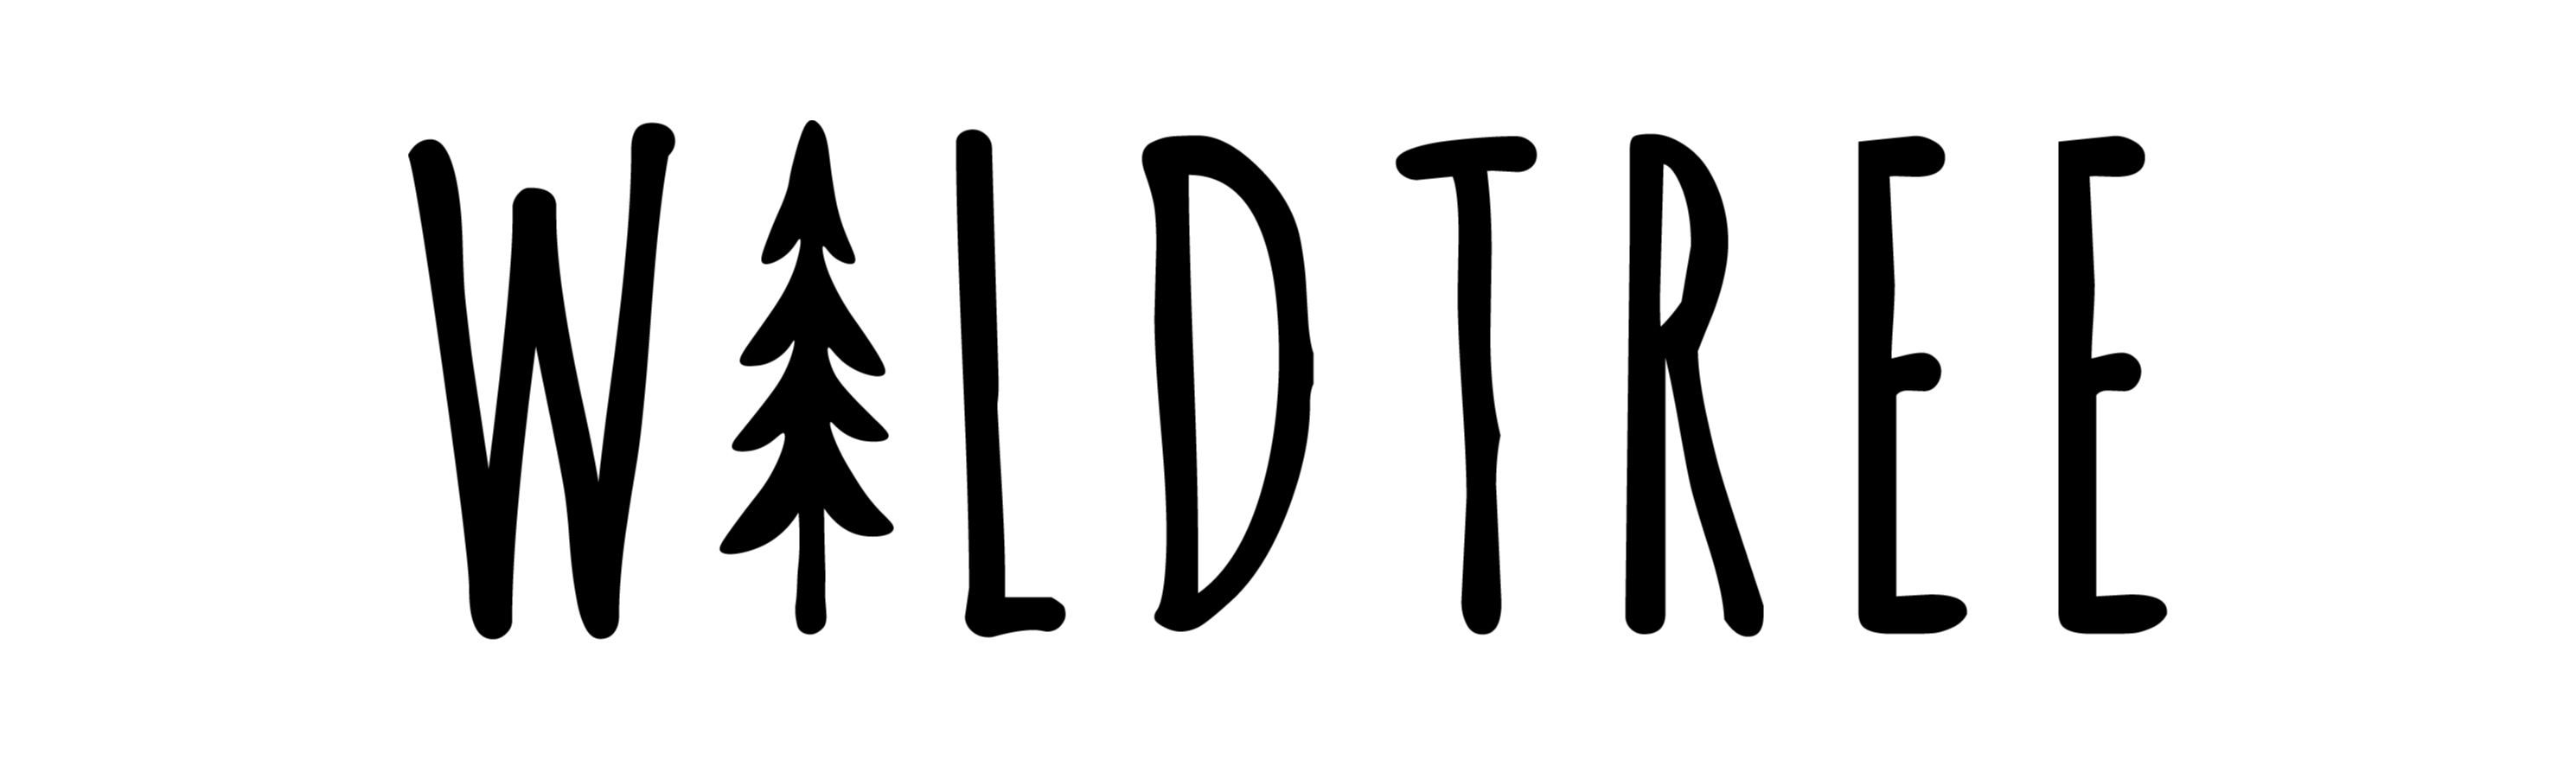 The Wildtree logo